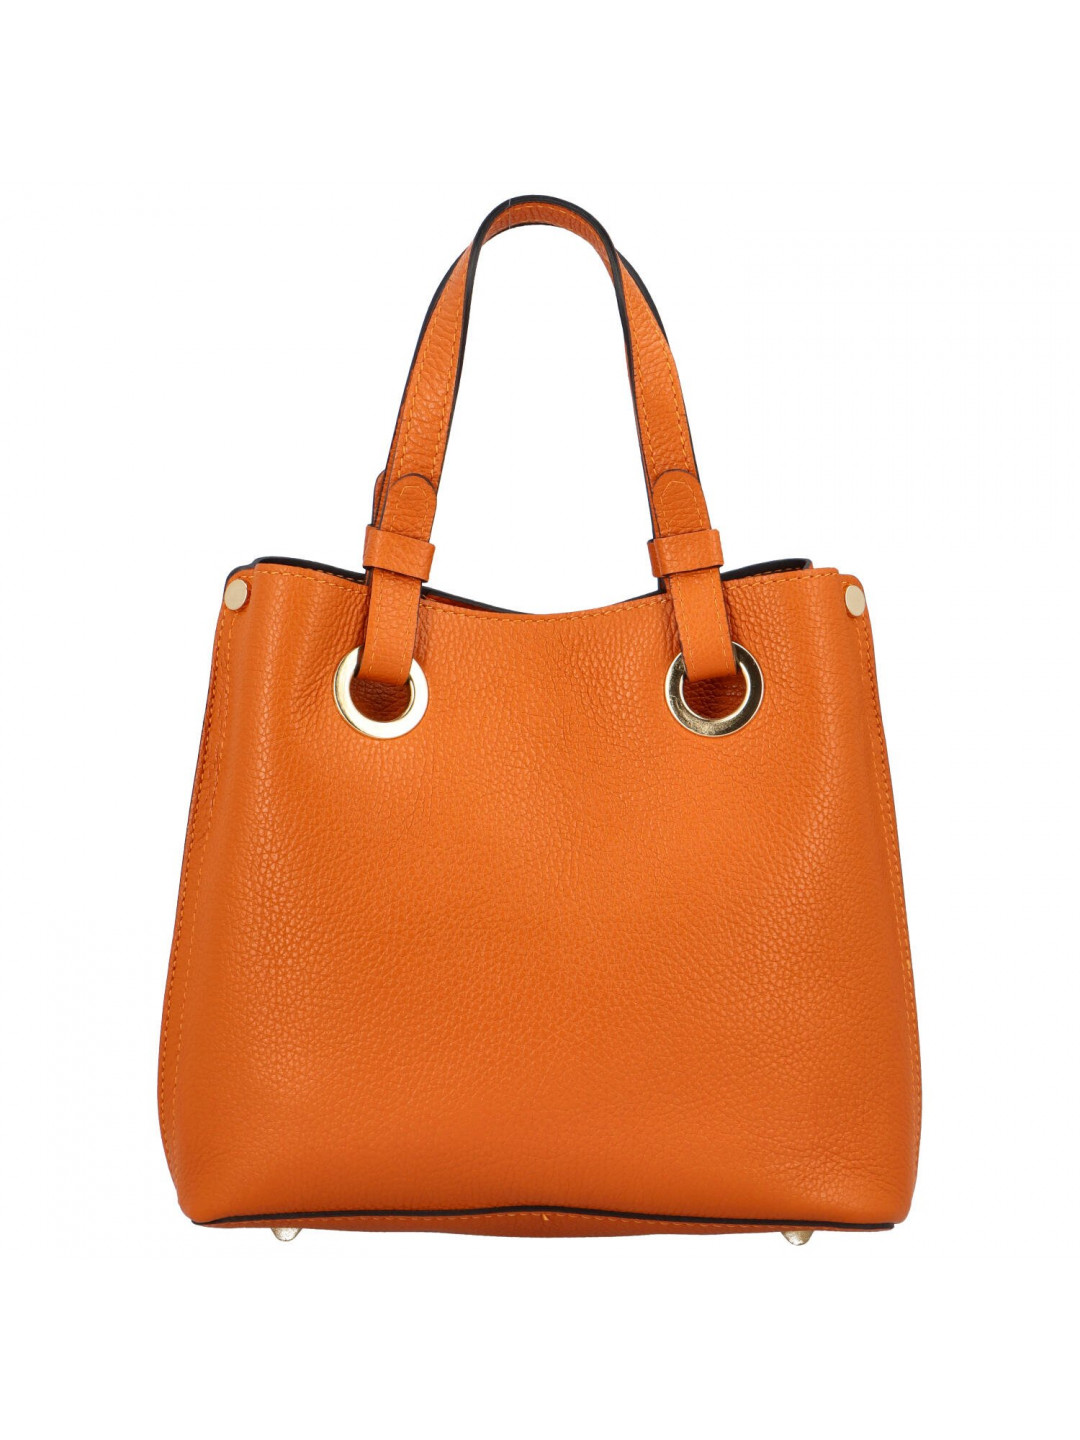 Dámská kožená kabelka oranžová – Delami Roseli